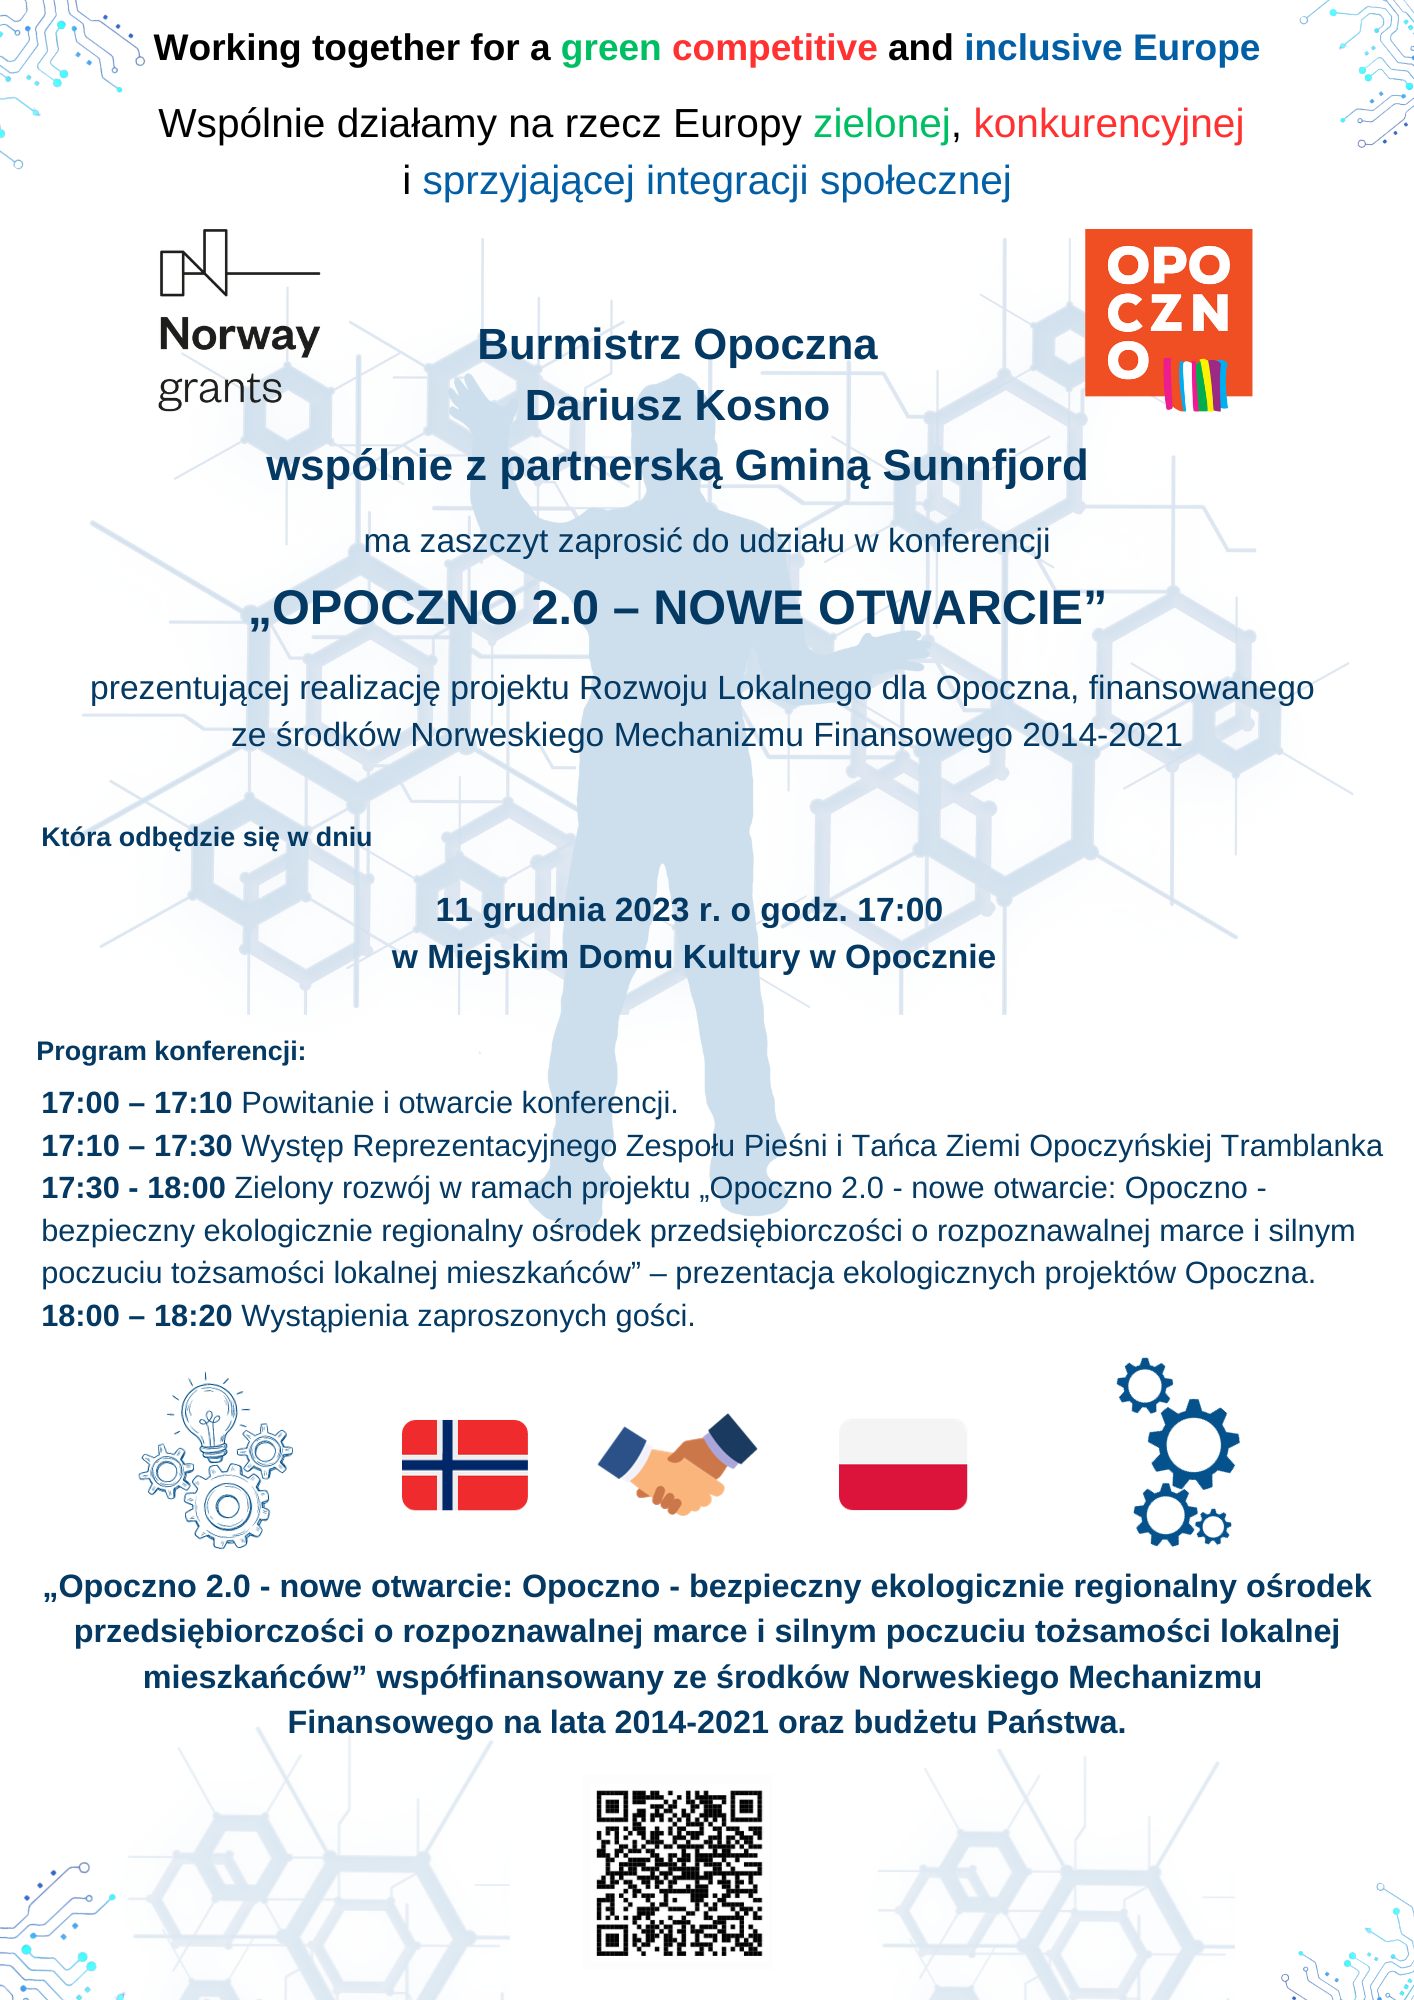   Burmistrz Opoczna Dariusz Kosno wspólnie z partnerską Gminą Sunnfjord  ma zaszczyt zaprosić do udziału w konferencji  „OPOCZNO 2.0 – NOWE OTWARCIE”  prezentującej realizację projektu Rozwoju Lokalnego dla Opoczna, finansowanego ze środków Norweskiego Mechanizmu Finansowego 2014-2021  Która odbędzie się w dniu 11 grudnia 2023 r. o godzinie 17:00 w Miejskim Domu Kultury w Opocznie.